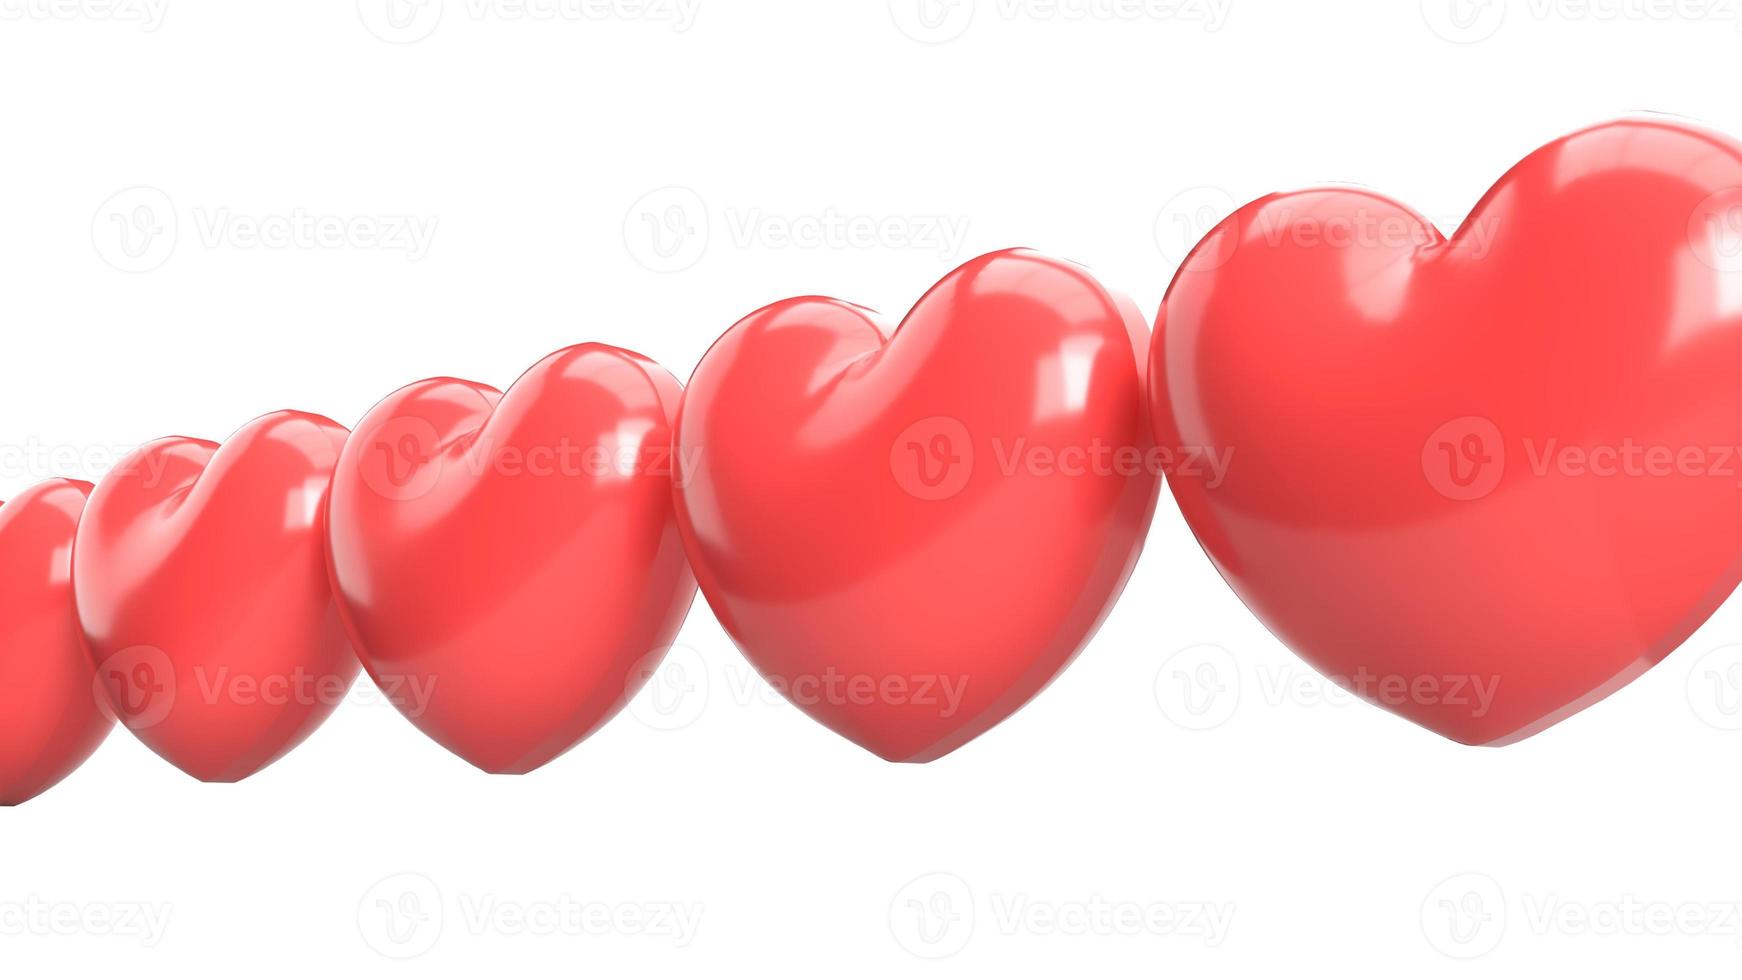 rotes Herz 3D-Rendering auf Weiß für Valentinsinhalte. foto